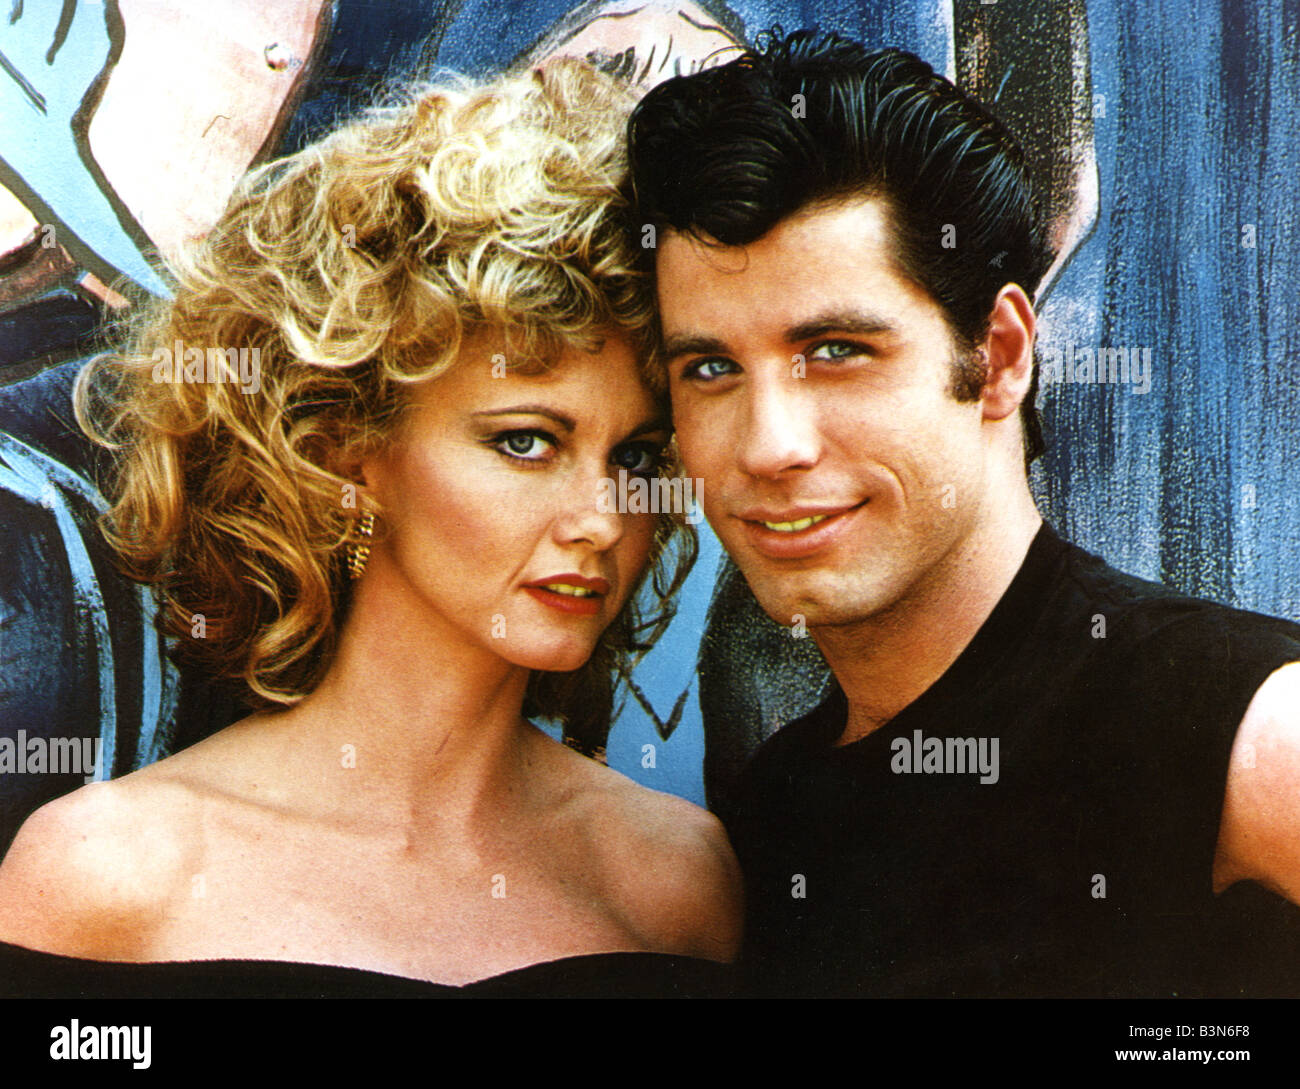 La graisse 1978 Paramount/Robert Stigwood film avec Olivia Newton-John et John Travolta Banque D'Images